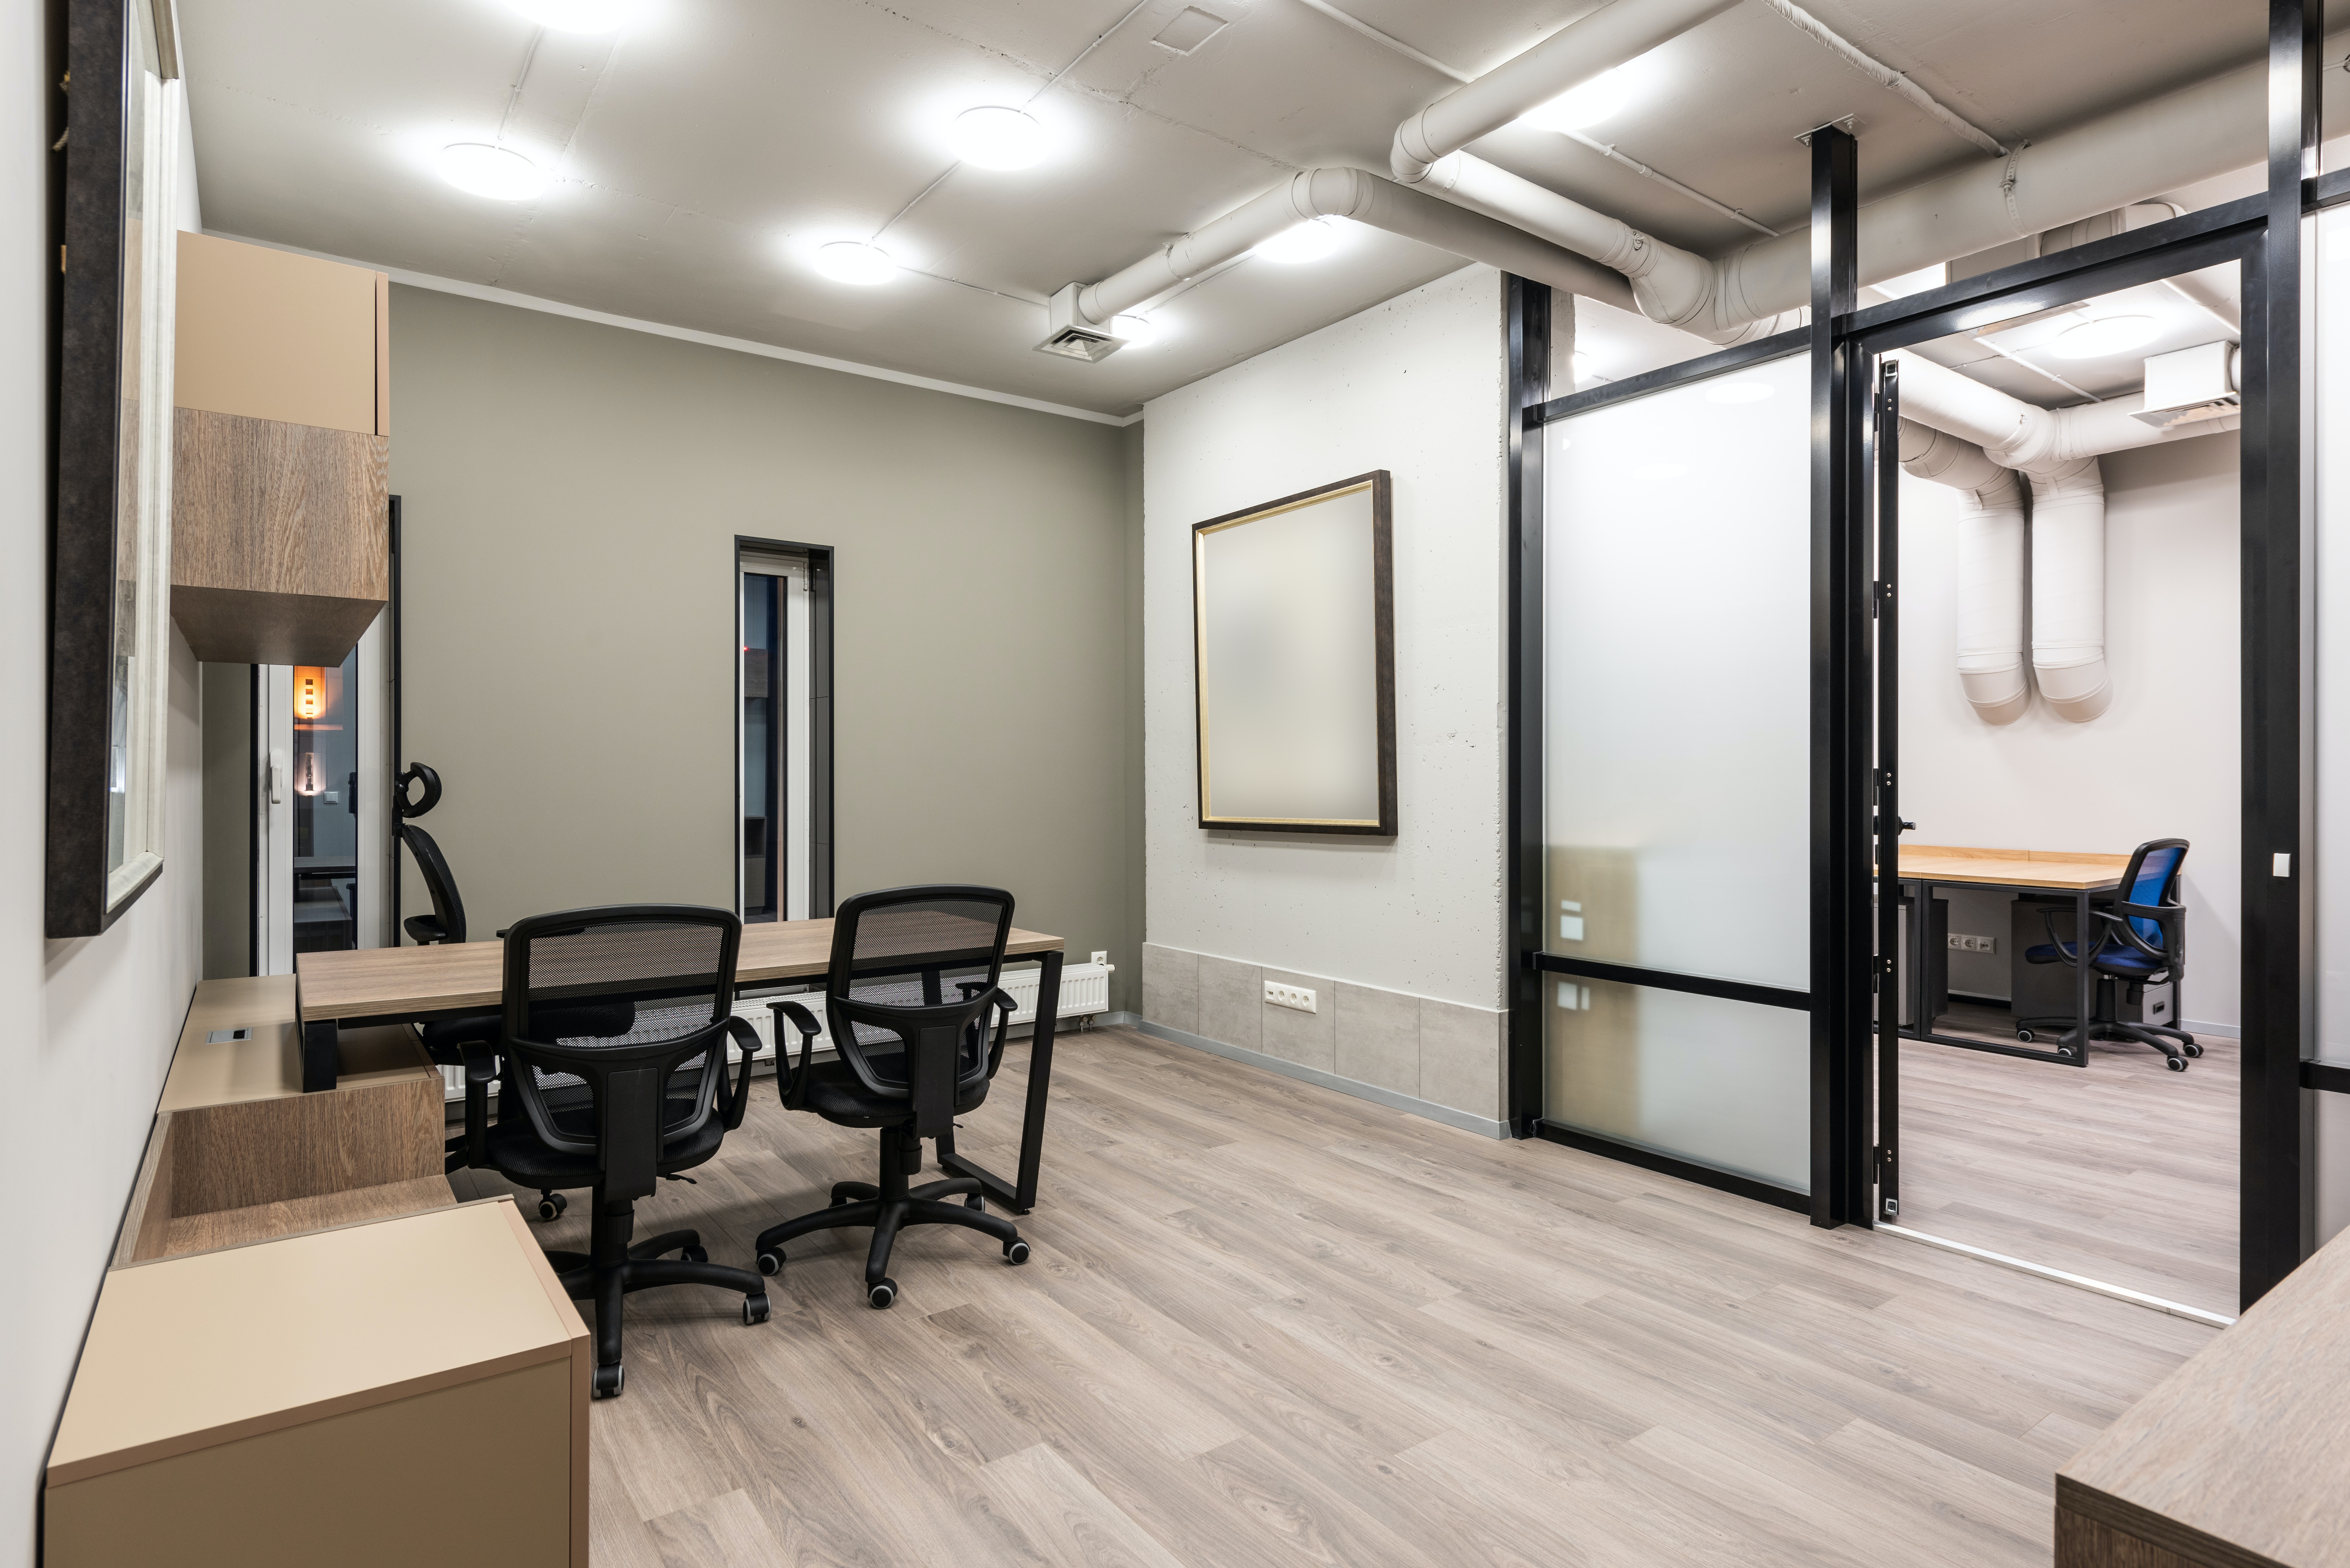 Ścianki biurowe - podziel przestrzeń według swoich potrzeb